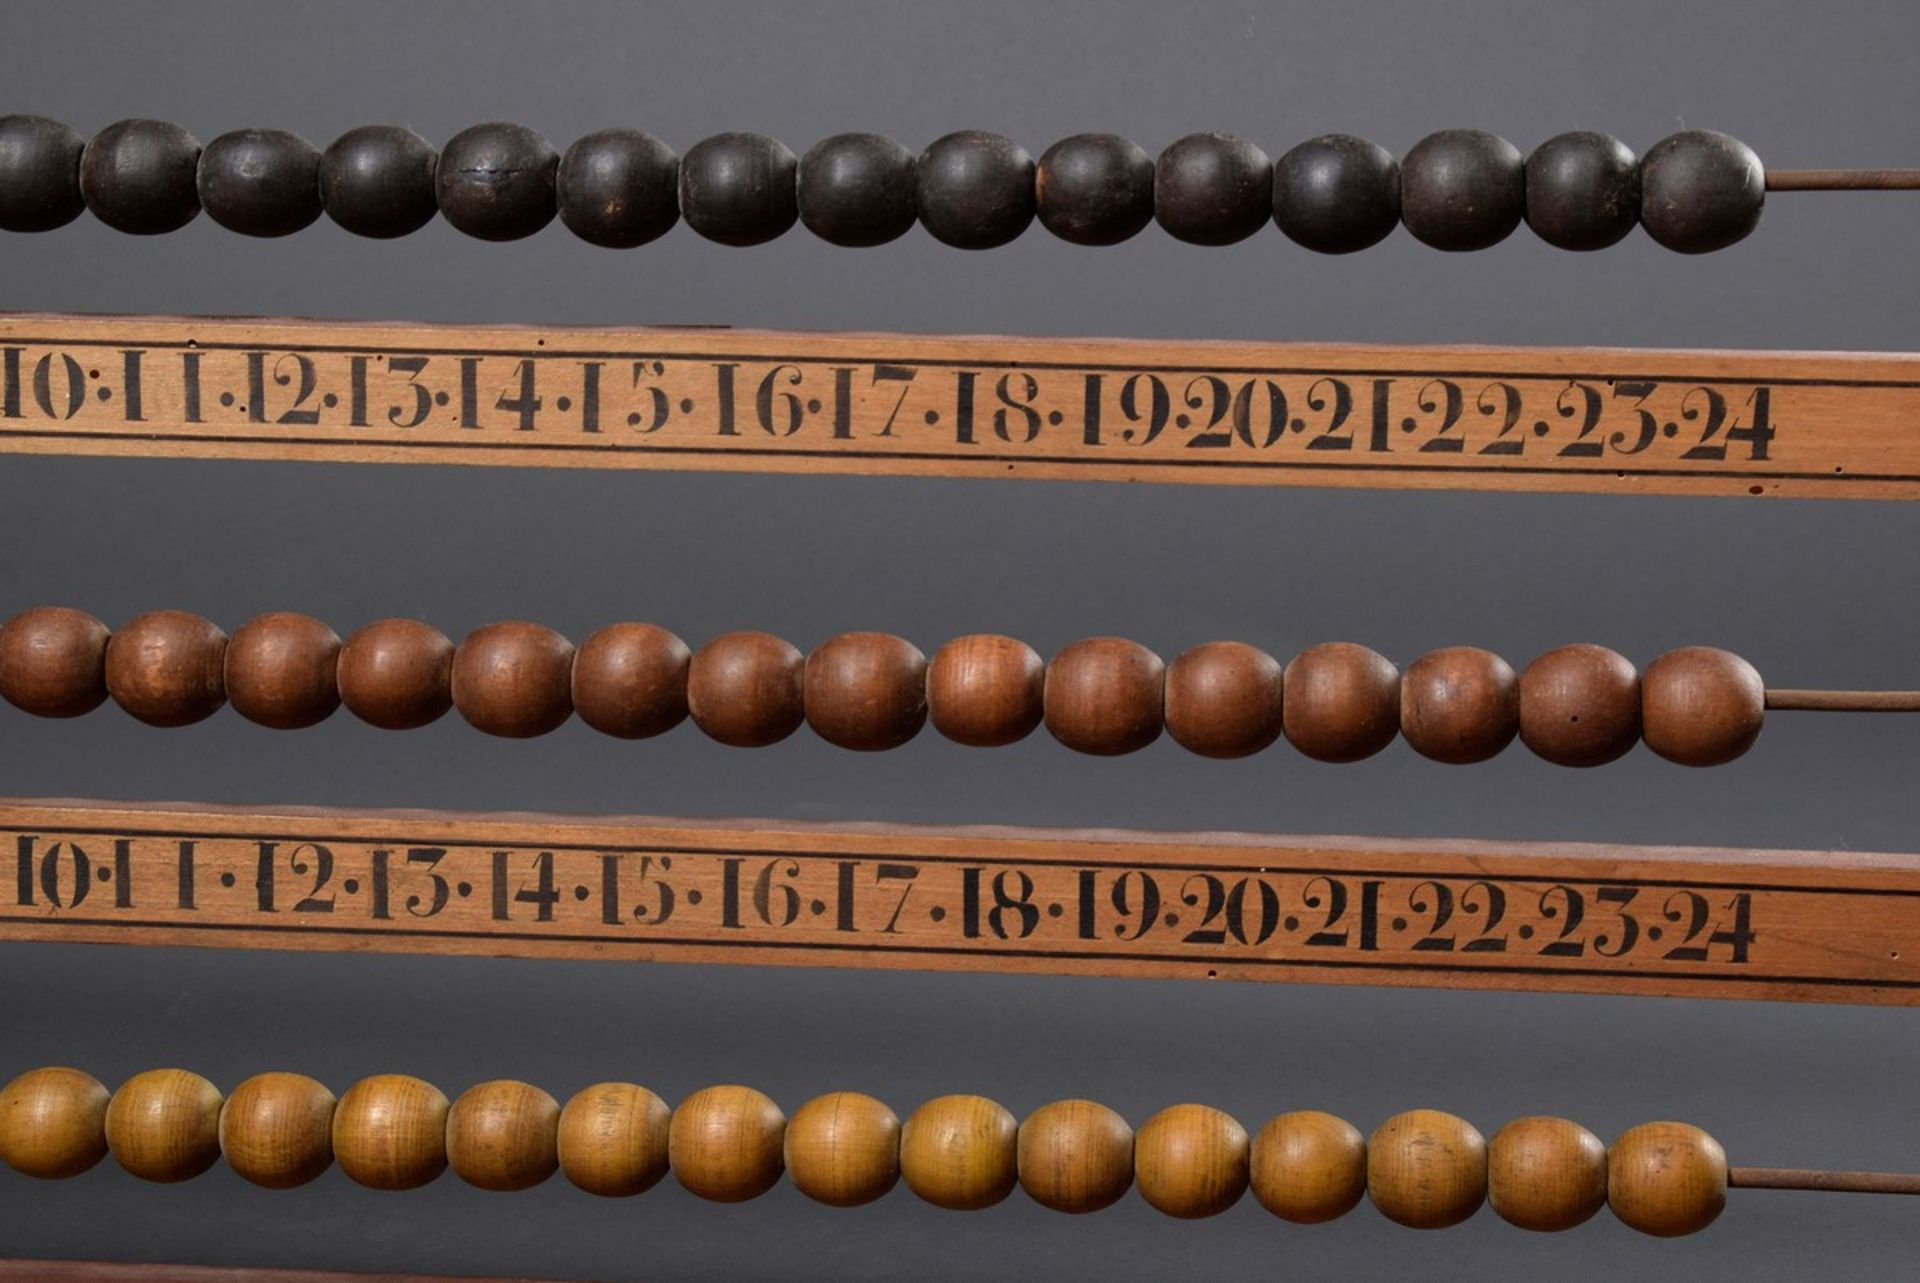 Zähltafel/Scoreboard mit Holzperlen (wohl für Billard/Snooker), Mahagonifurnier - Bild 3 aus 5